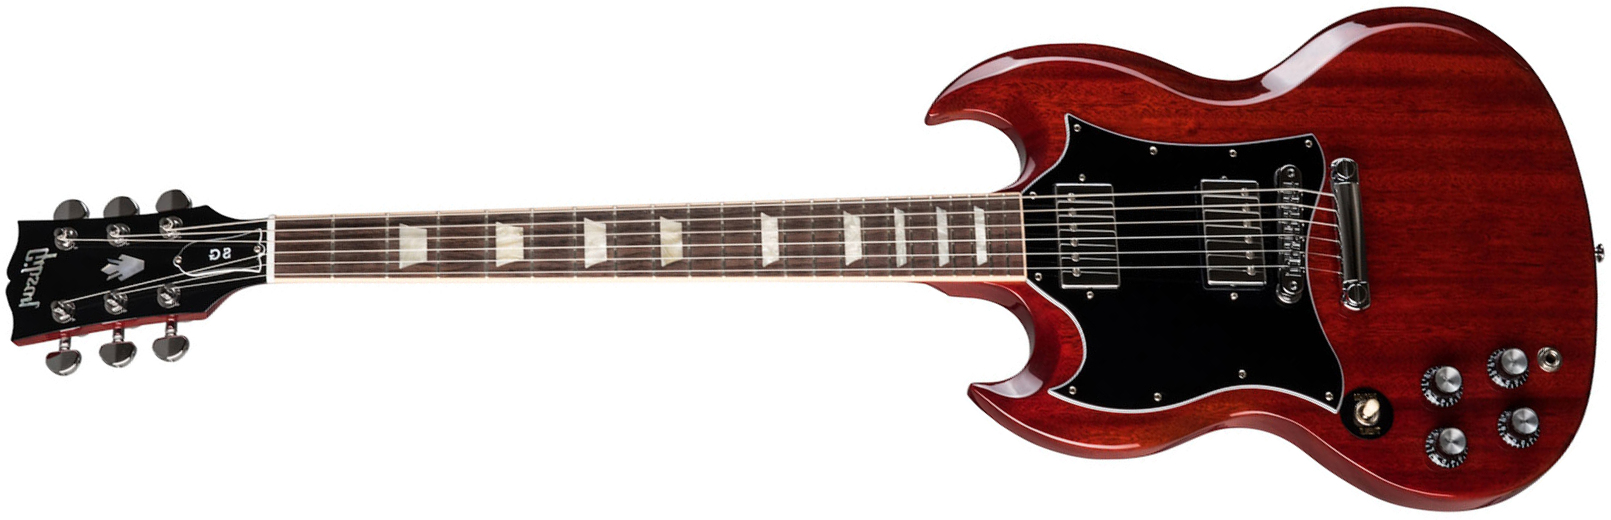 Gibson Sg Standard Lh Gaucher 2h Ht Rw - Heritage Cherry - Linkshandige elektrische gitaar - Main picture